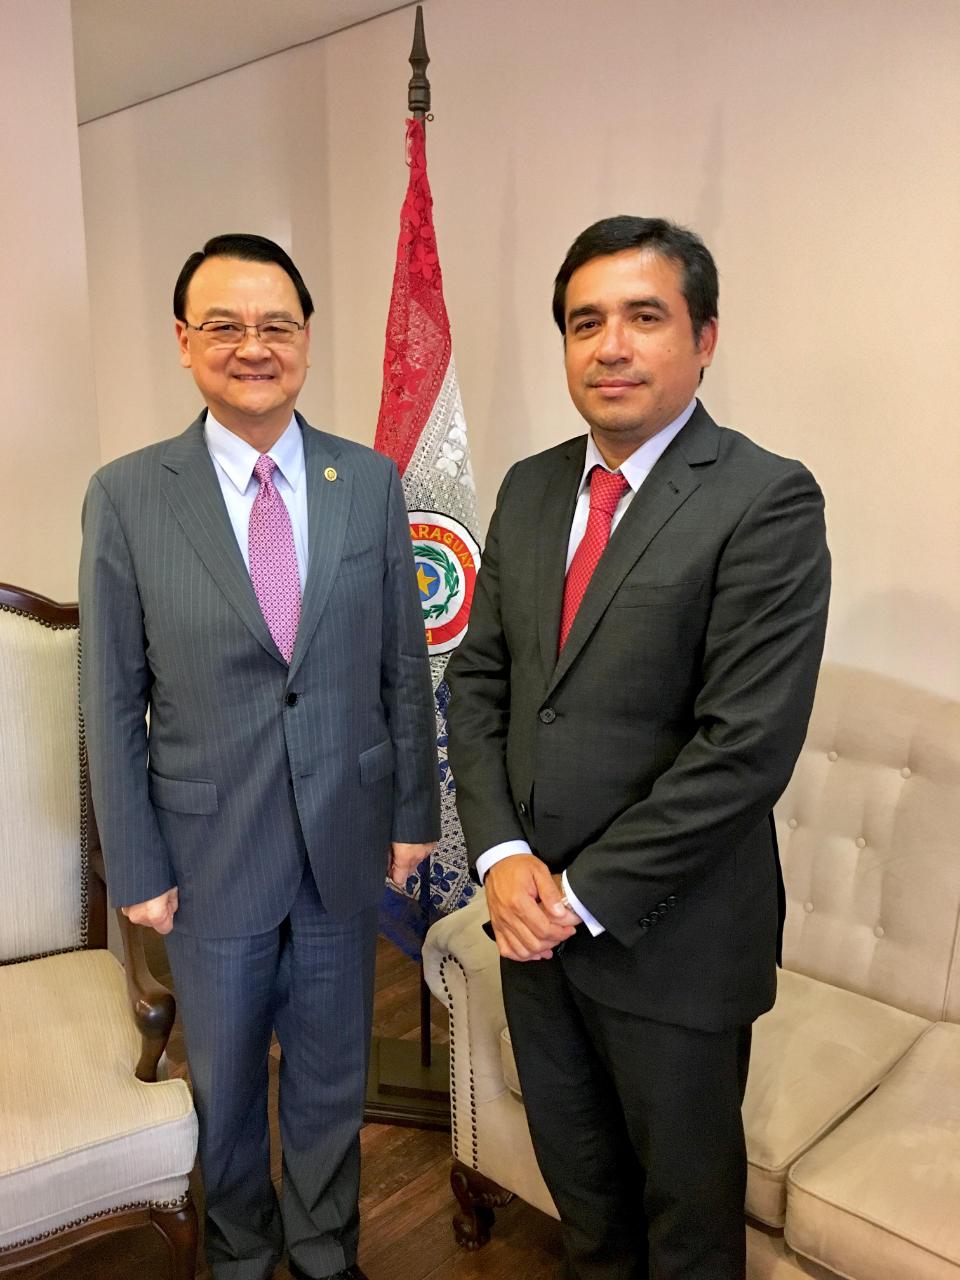 El Embajador de la República de China (Taiwán), Dr. Diego L. Chou (i), visitó al nuevo ministro de Justicia, Julio Ríos el día 10 de septiembre, 2018. Conversaron sobre temas de la cooperación bilateral entre Taiwán y Paraguay.